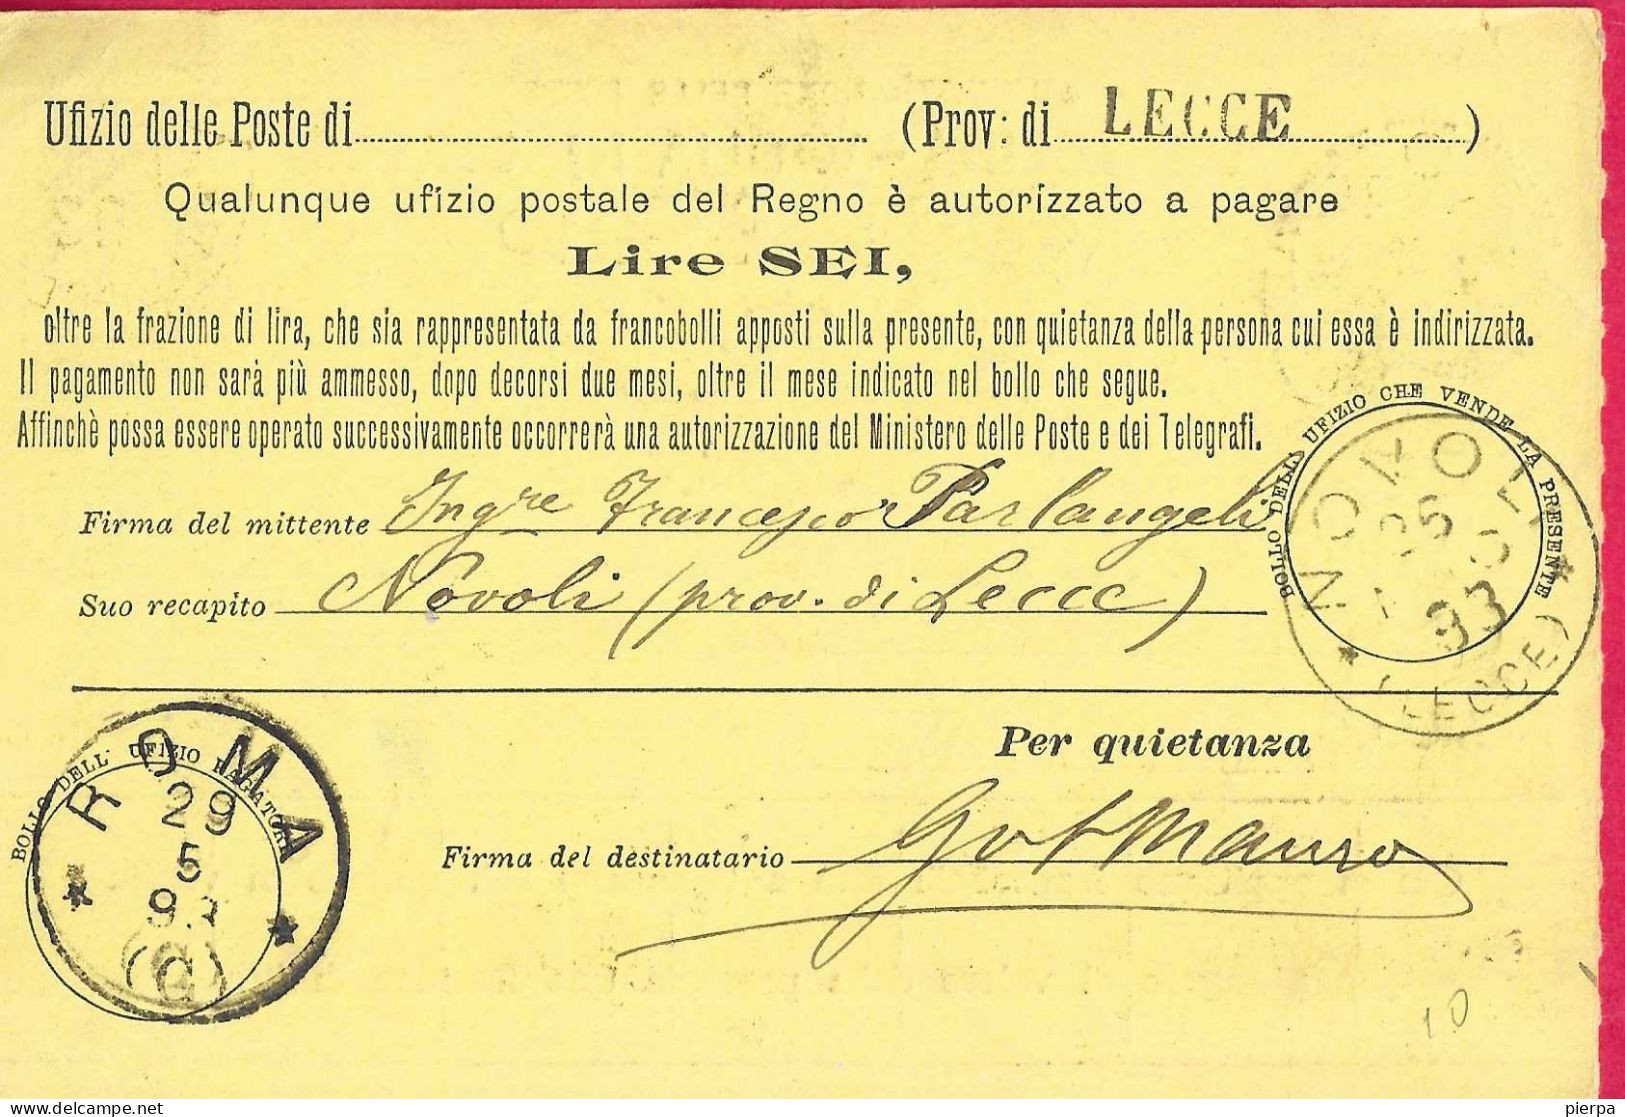 INTERO CARTOLINA-VAGLIA UMBERTO C.15 DA LIRE 6 (CAT. INT. 10) -VIAGGIATA DA NOVOLI *26.5.93* /(LECCE)" PER ROMA - Stamped Stationery